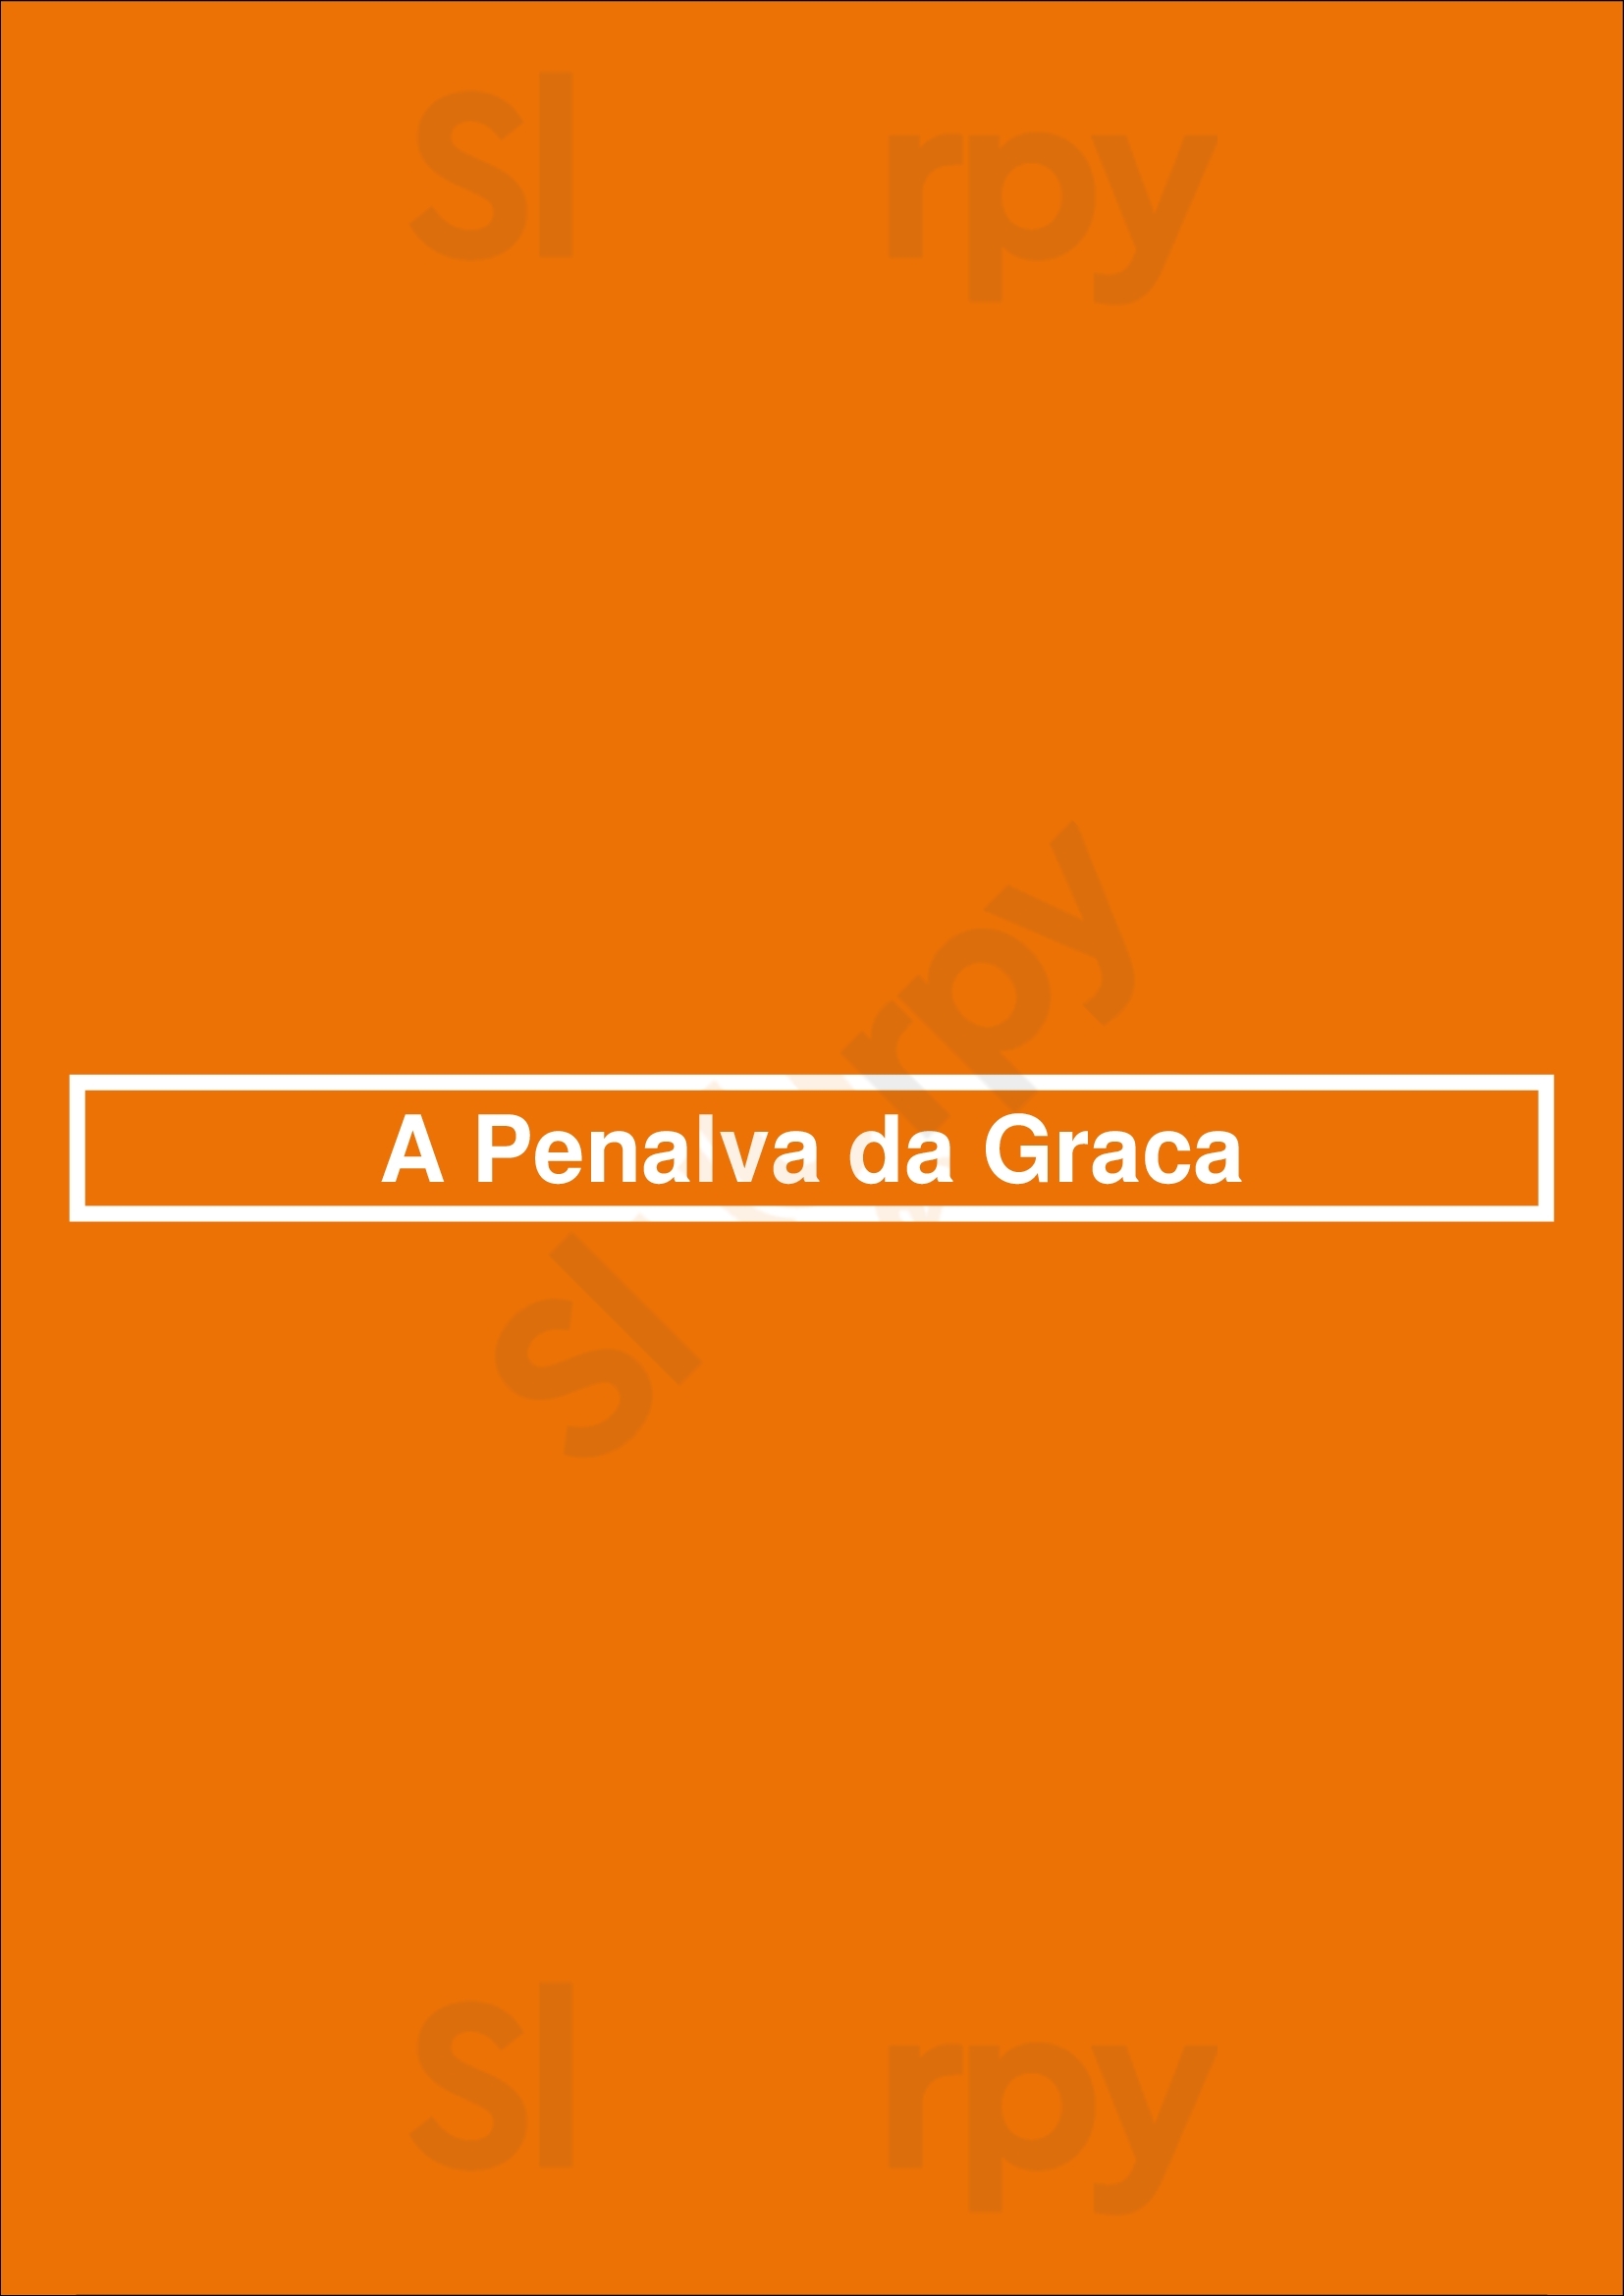 A Penalva Da Graca Lisboa Menu - 1